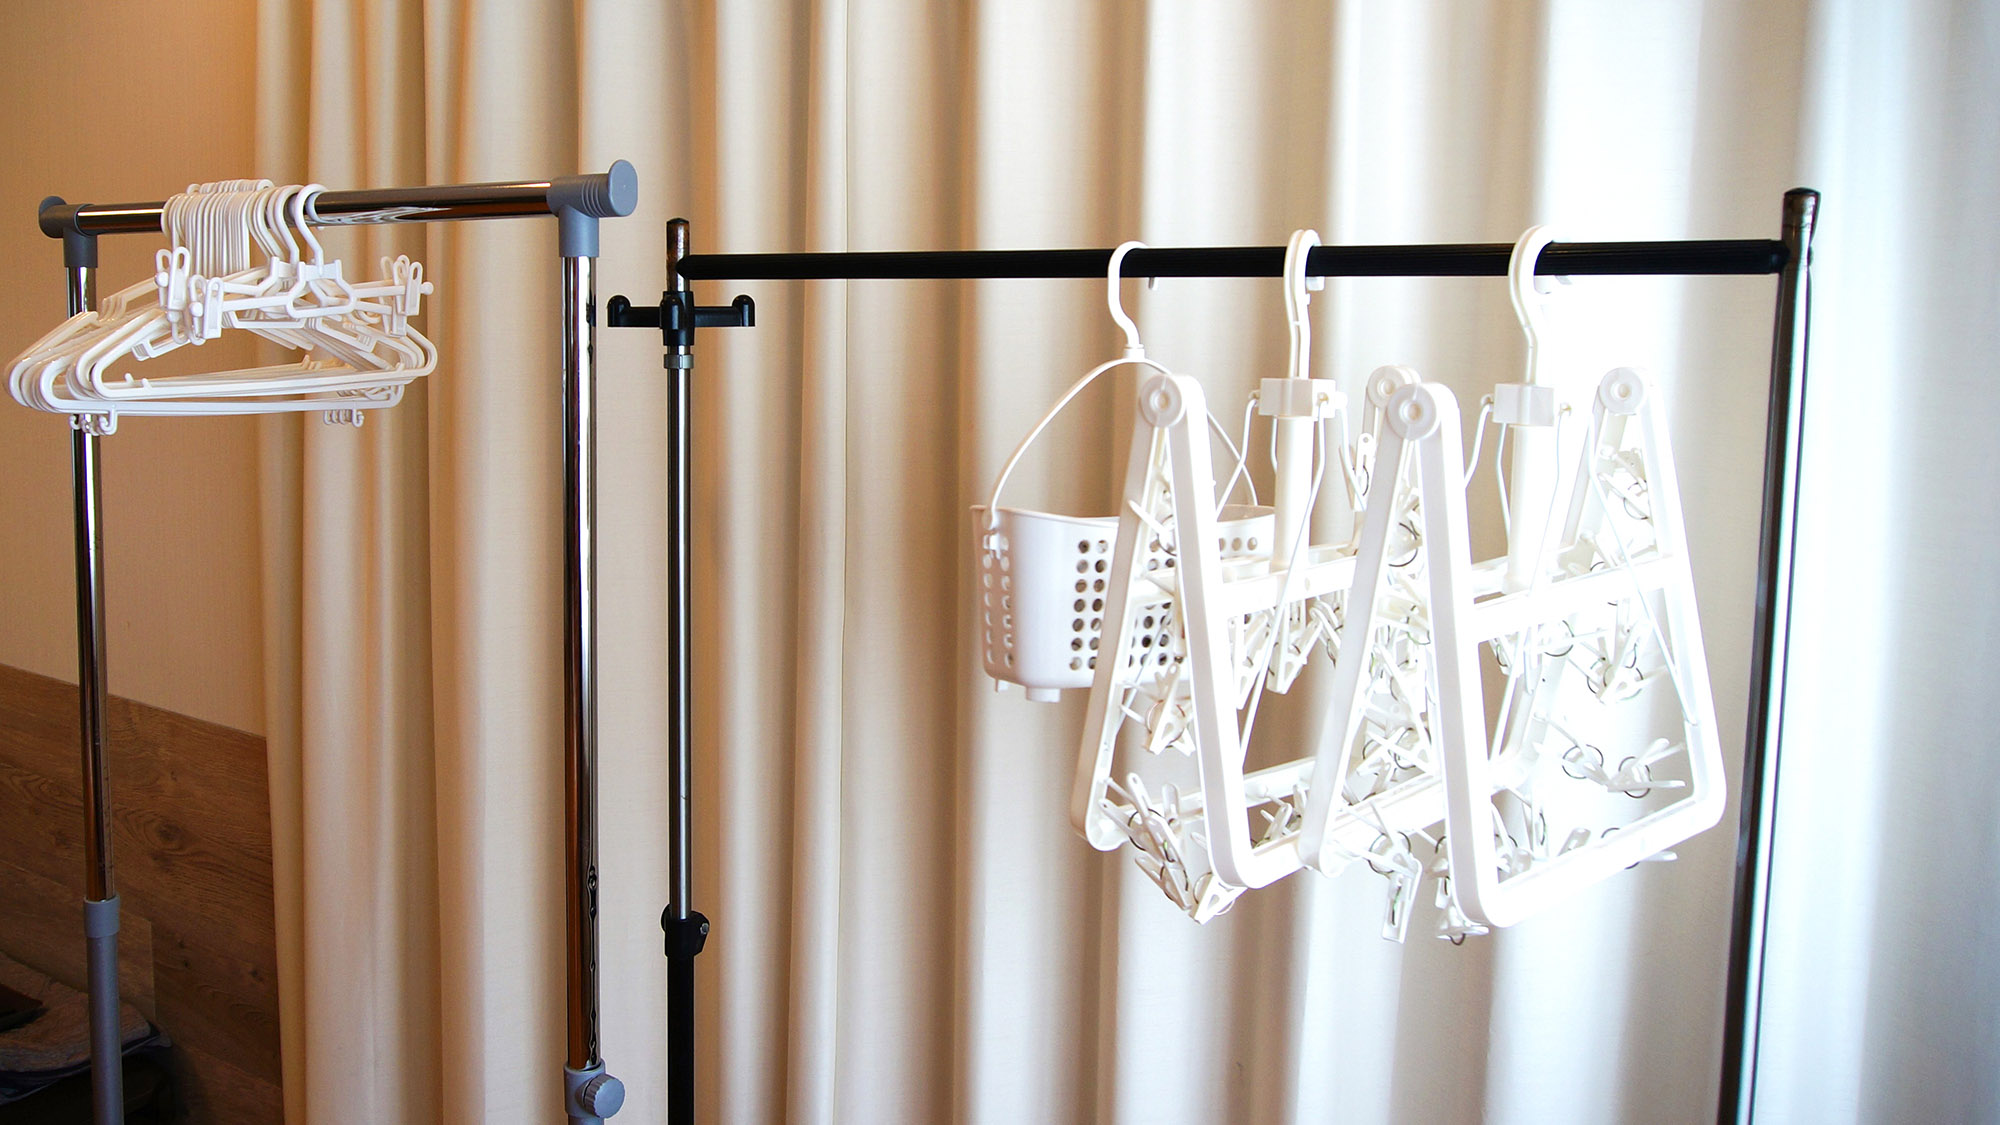 ・「別館」洗濯ハンガー：洗濯後に干すスペースがあるので便利です